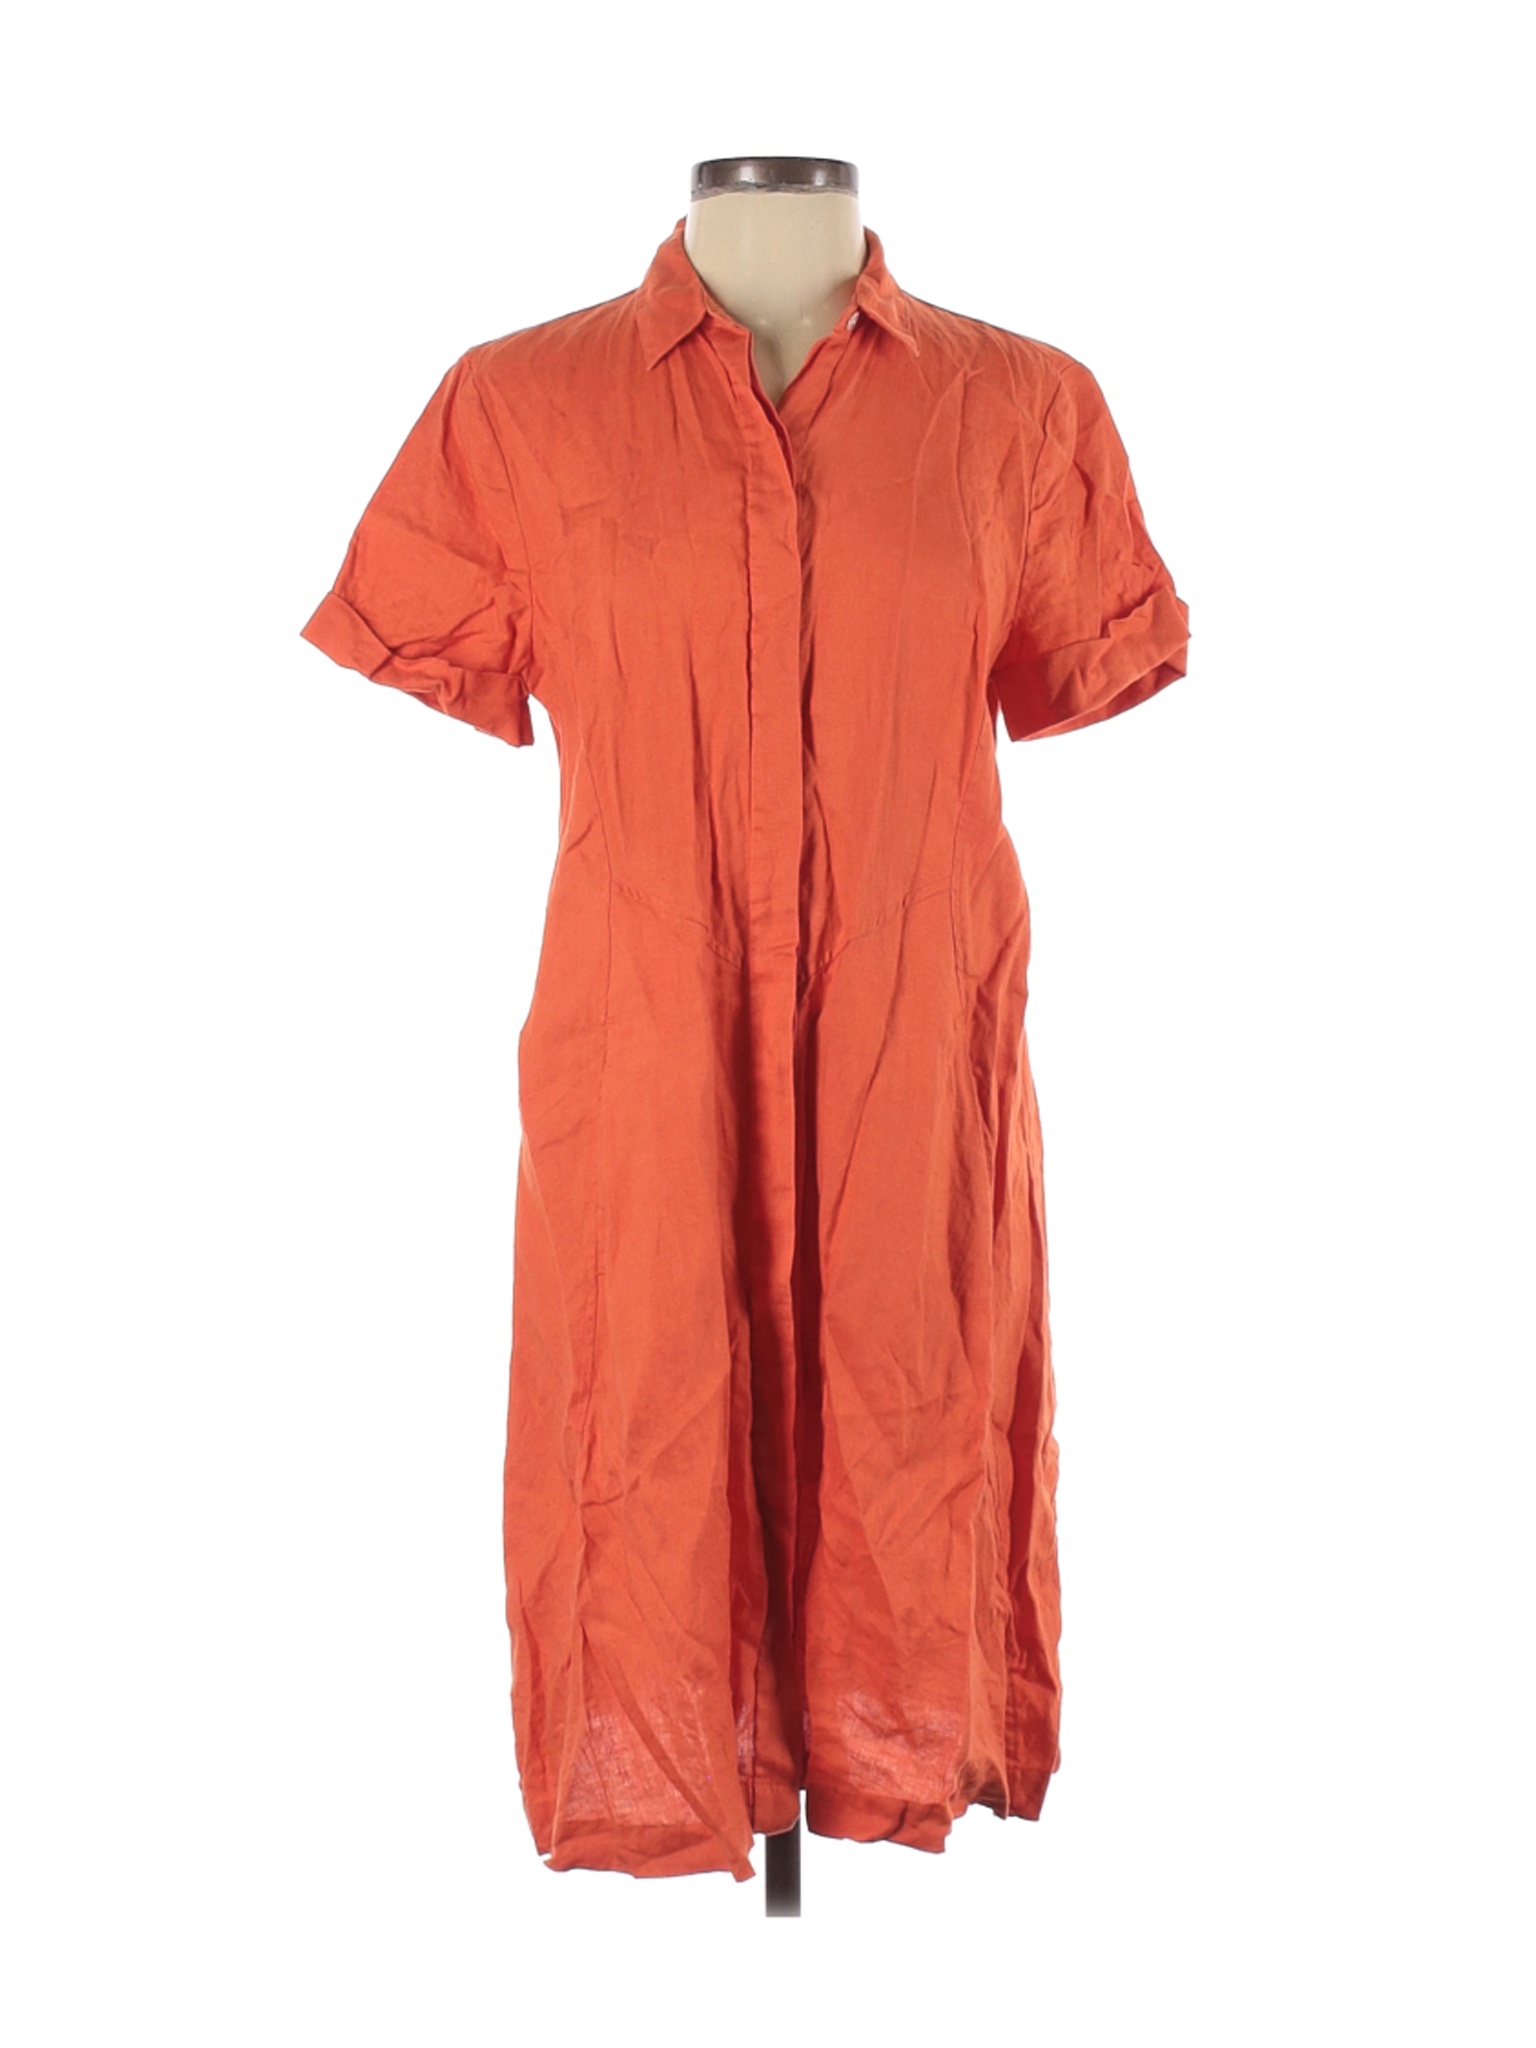 J.Jill Women Orange Casual Dress S | eBay